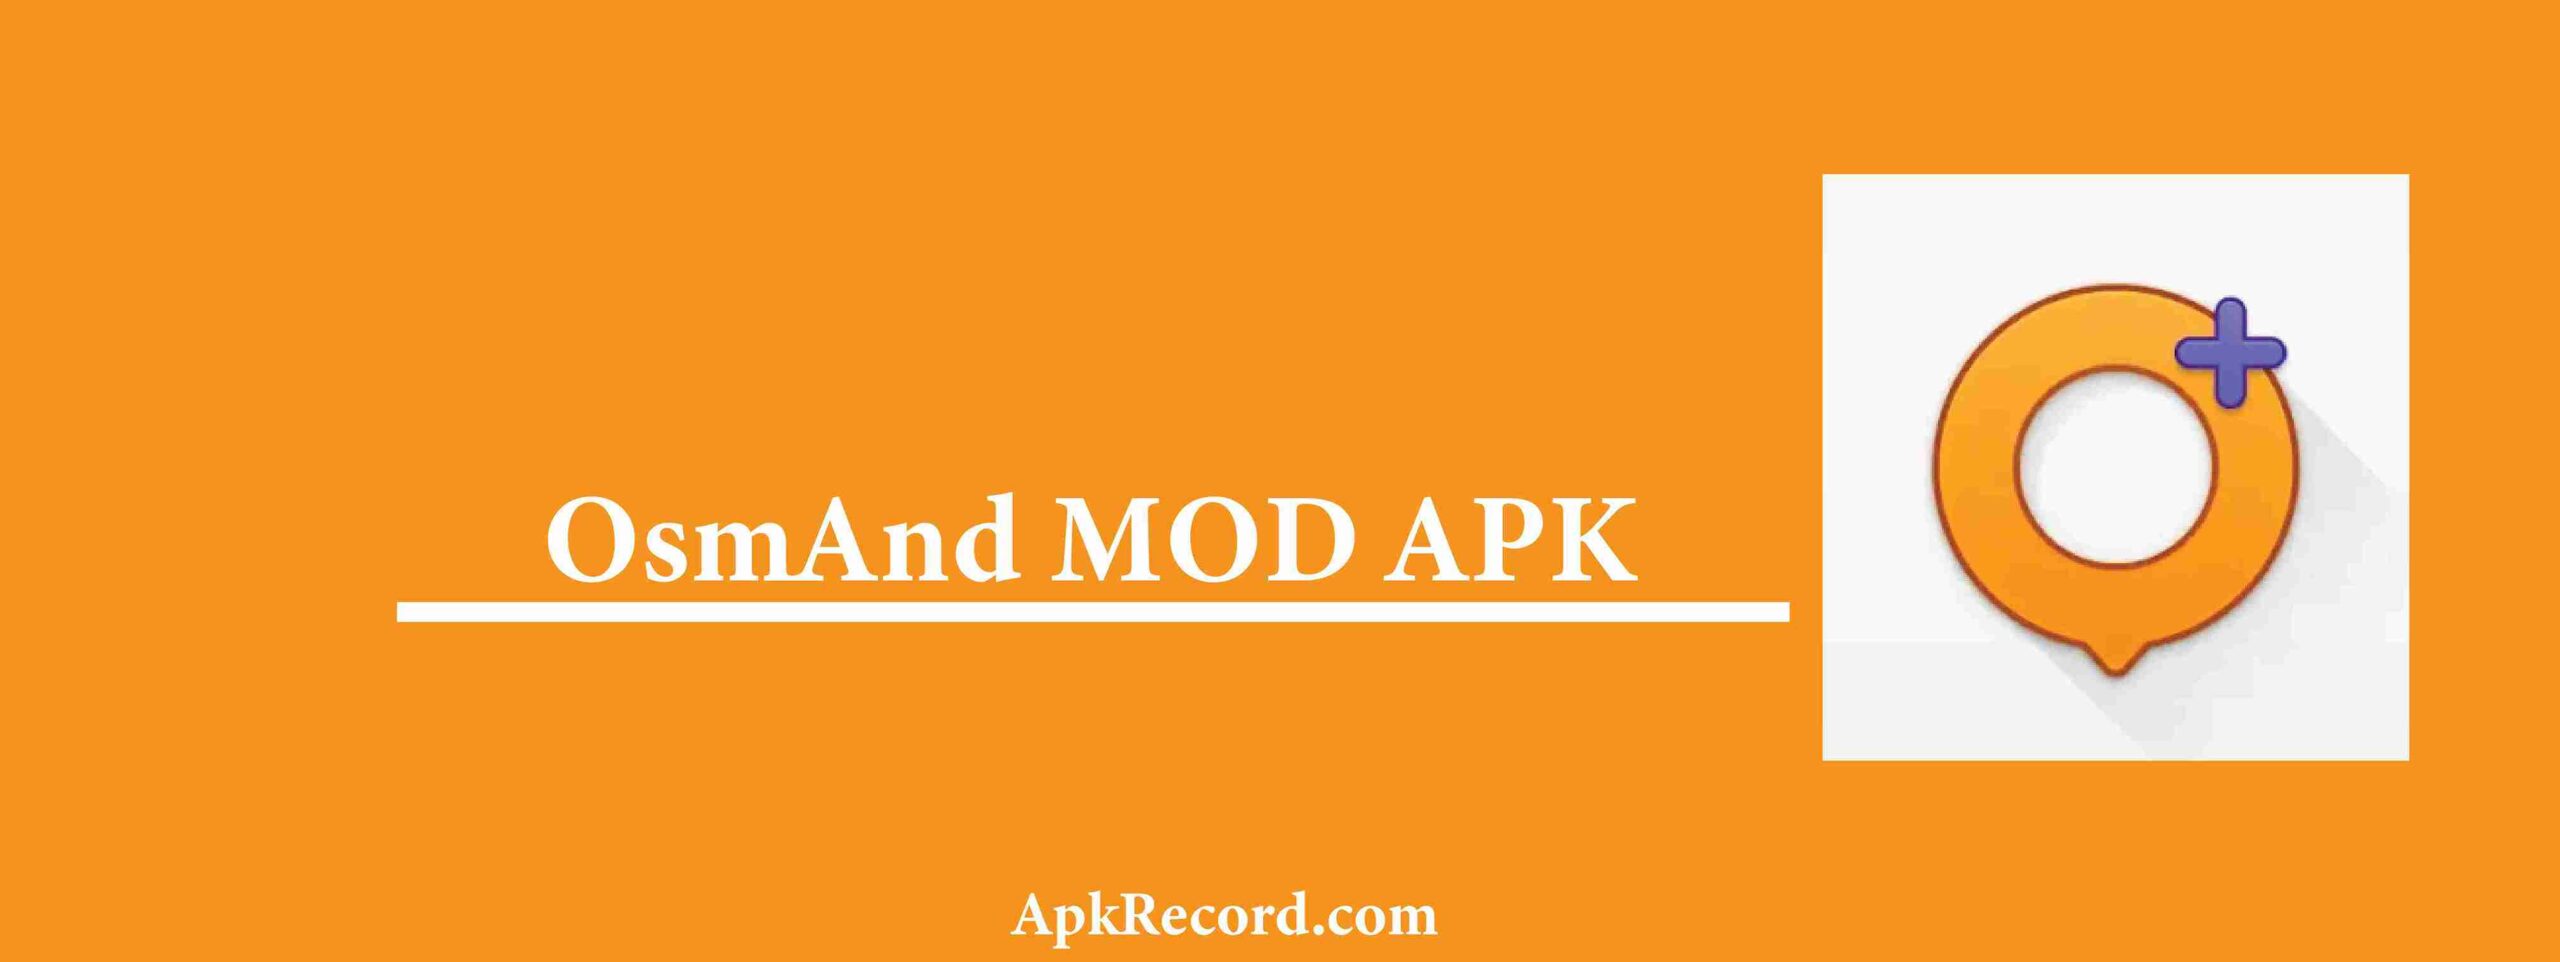 OsmAnd+ MOD APK V4.7.1